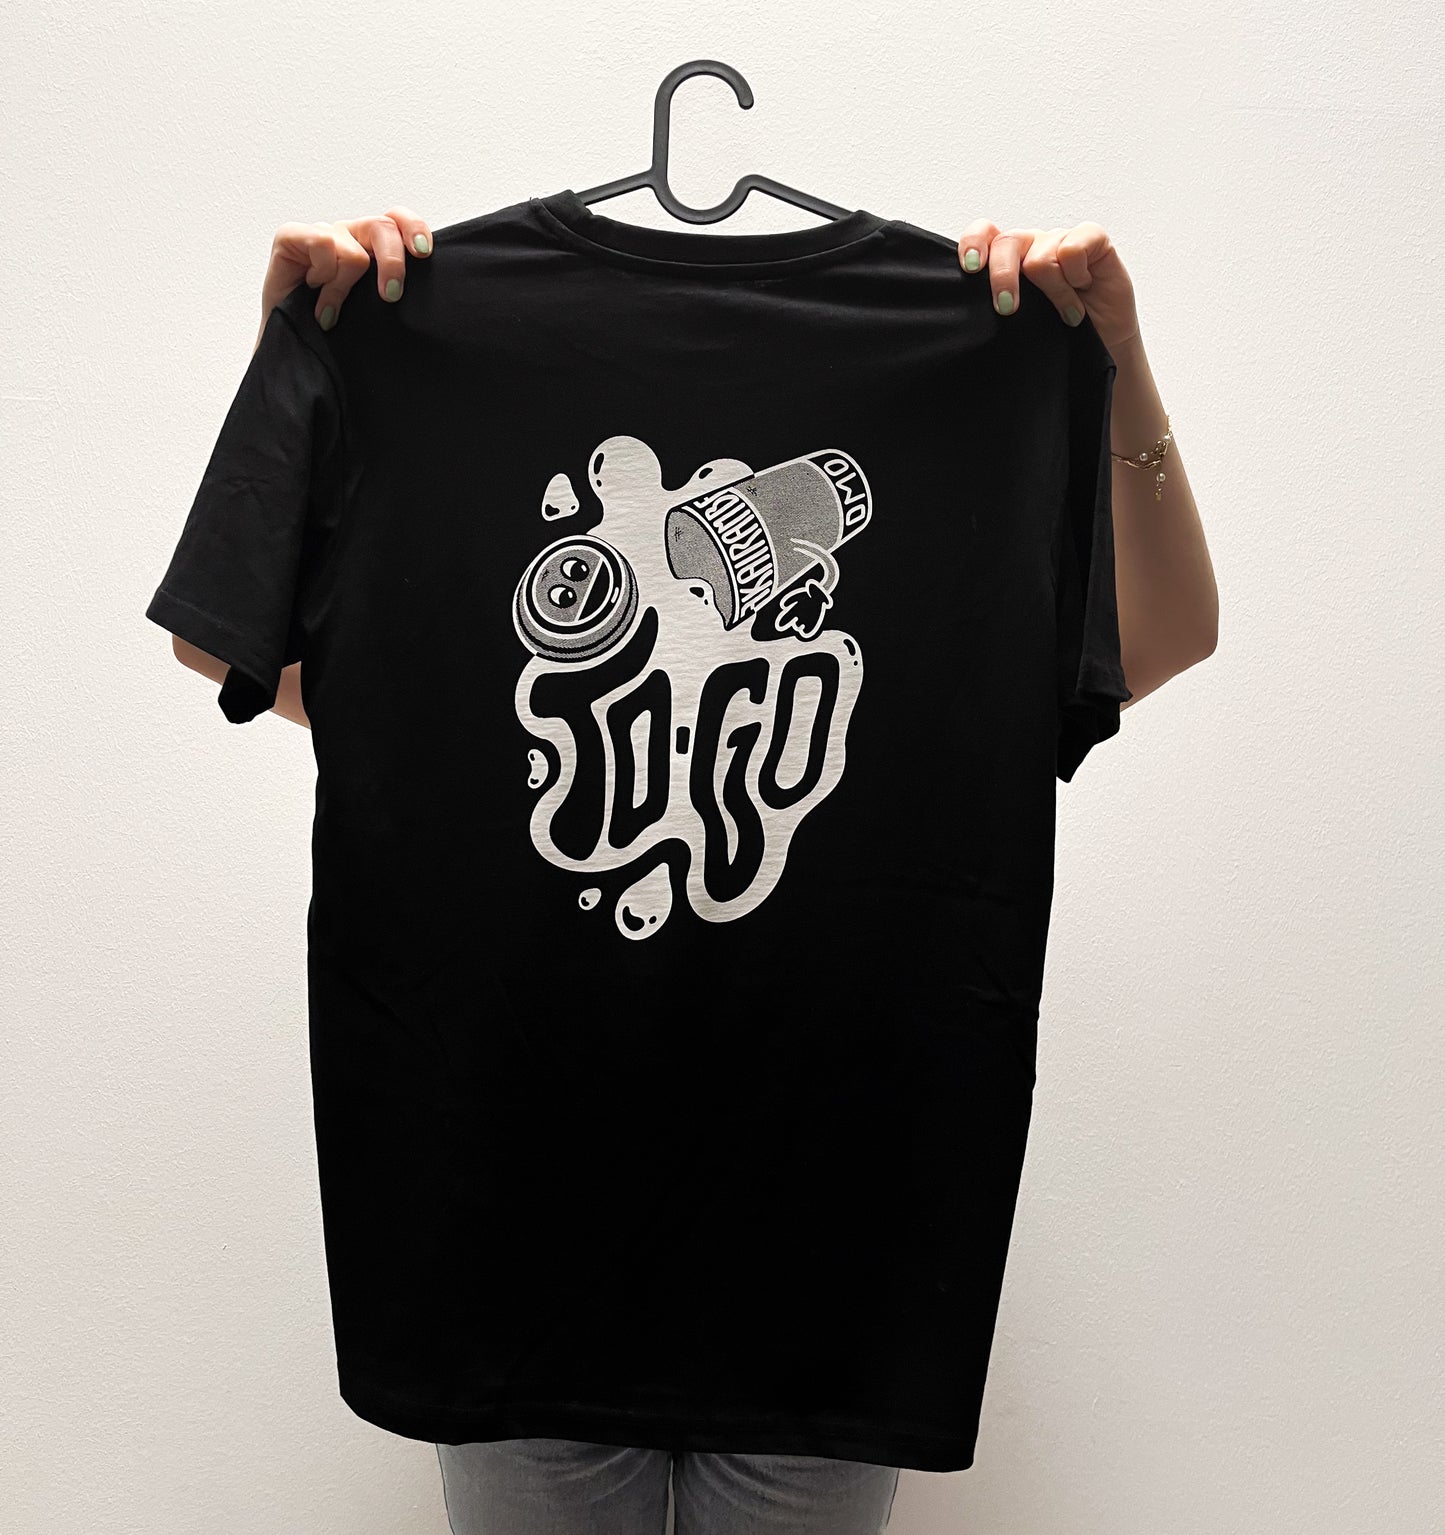 DMO - To Go - Shirt (Limited)